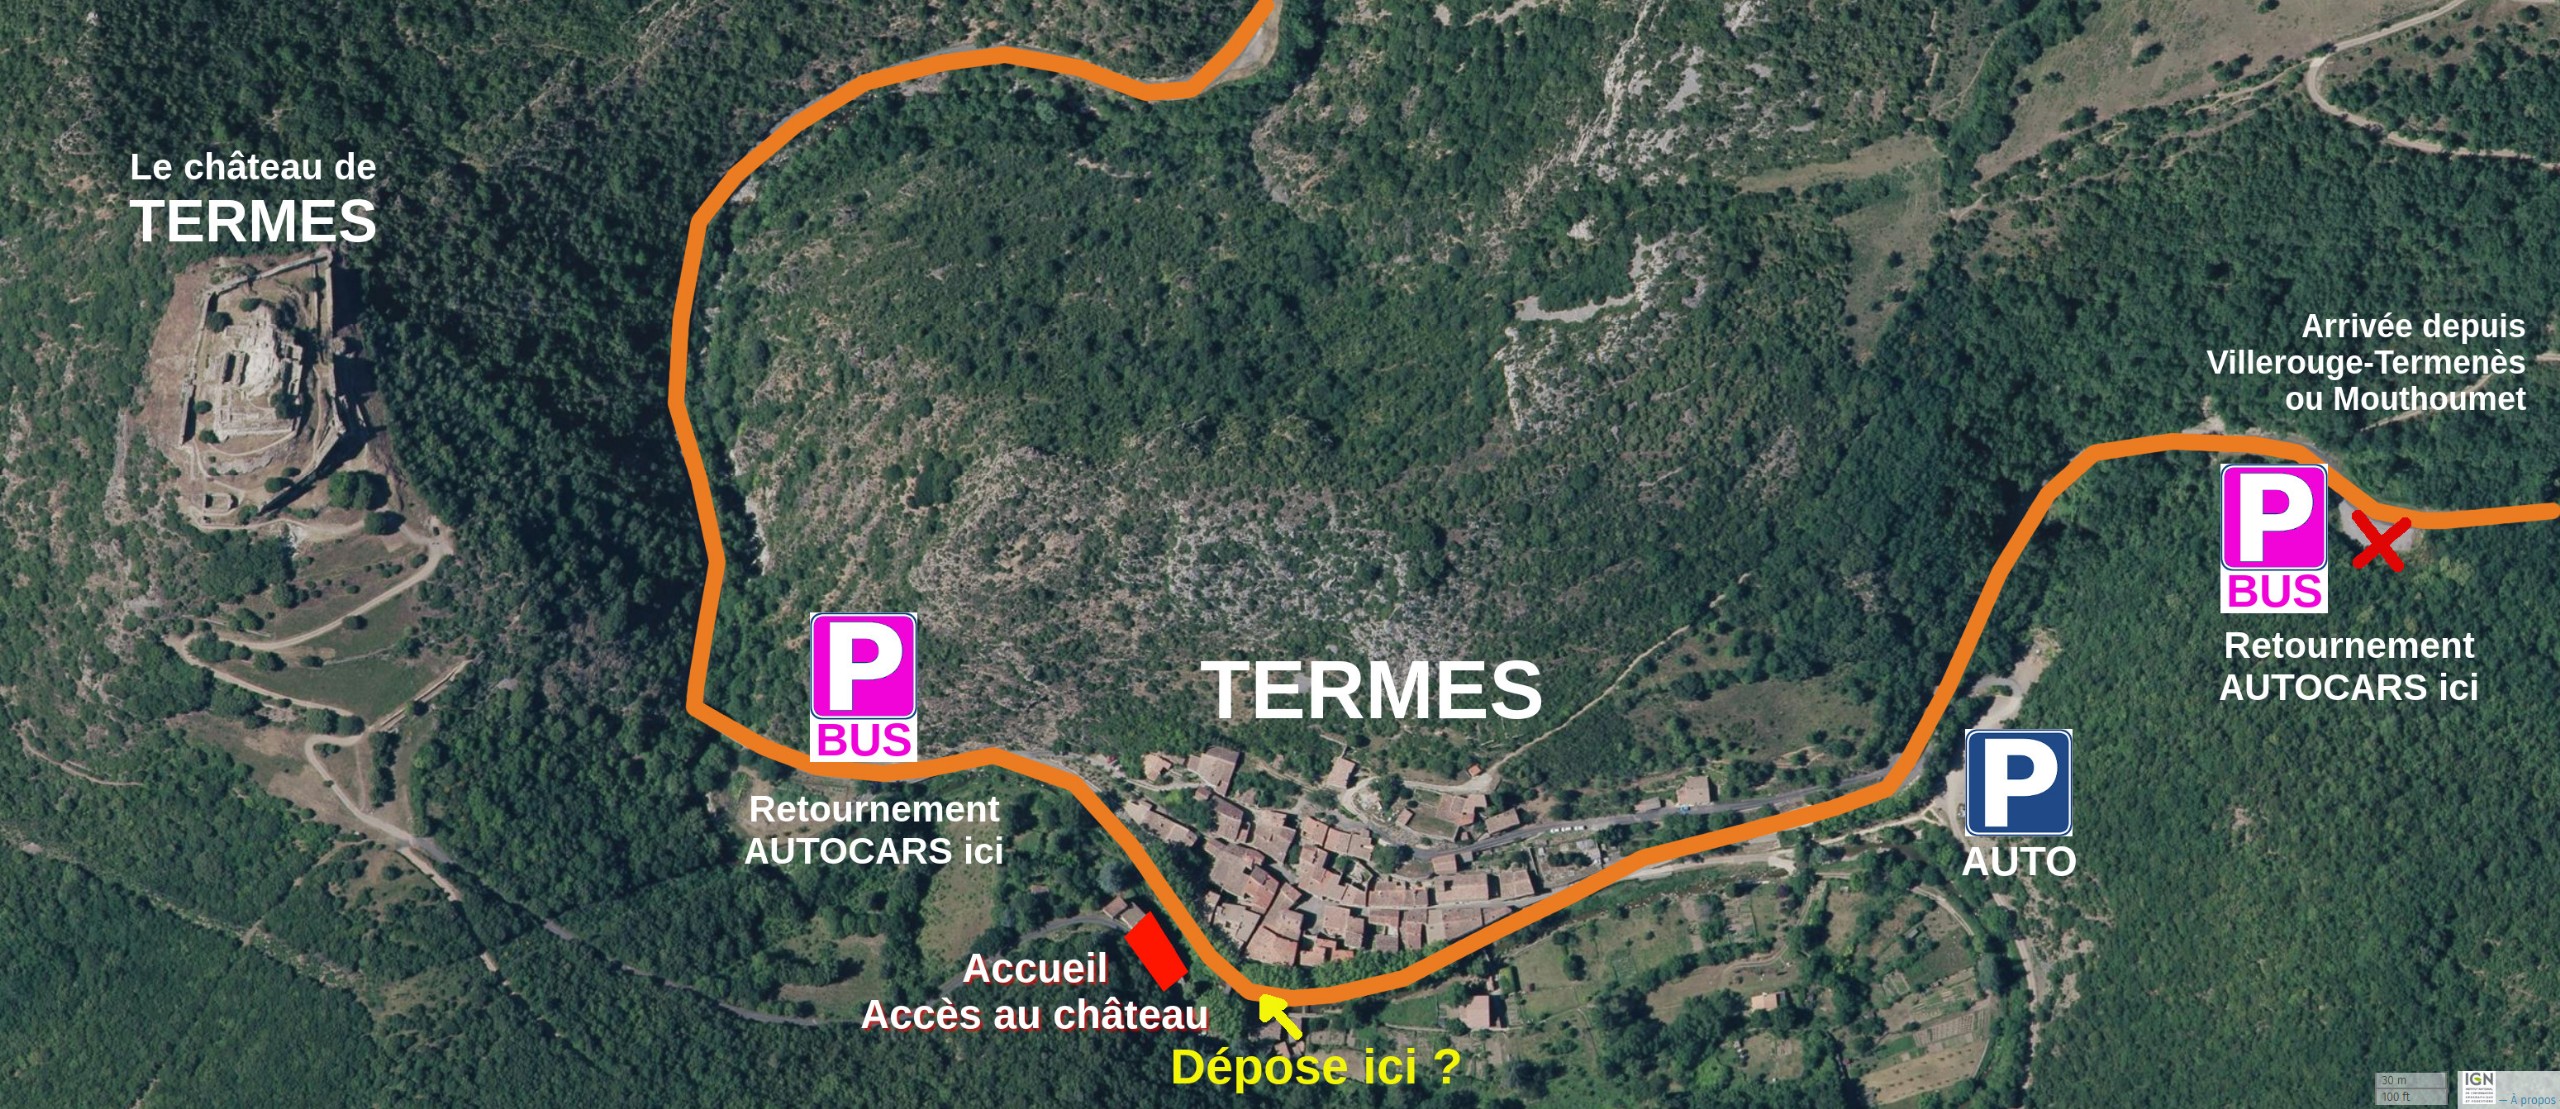 Plan accès bus autocars château de Termes